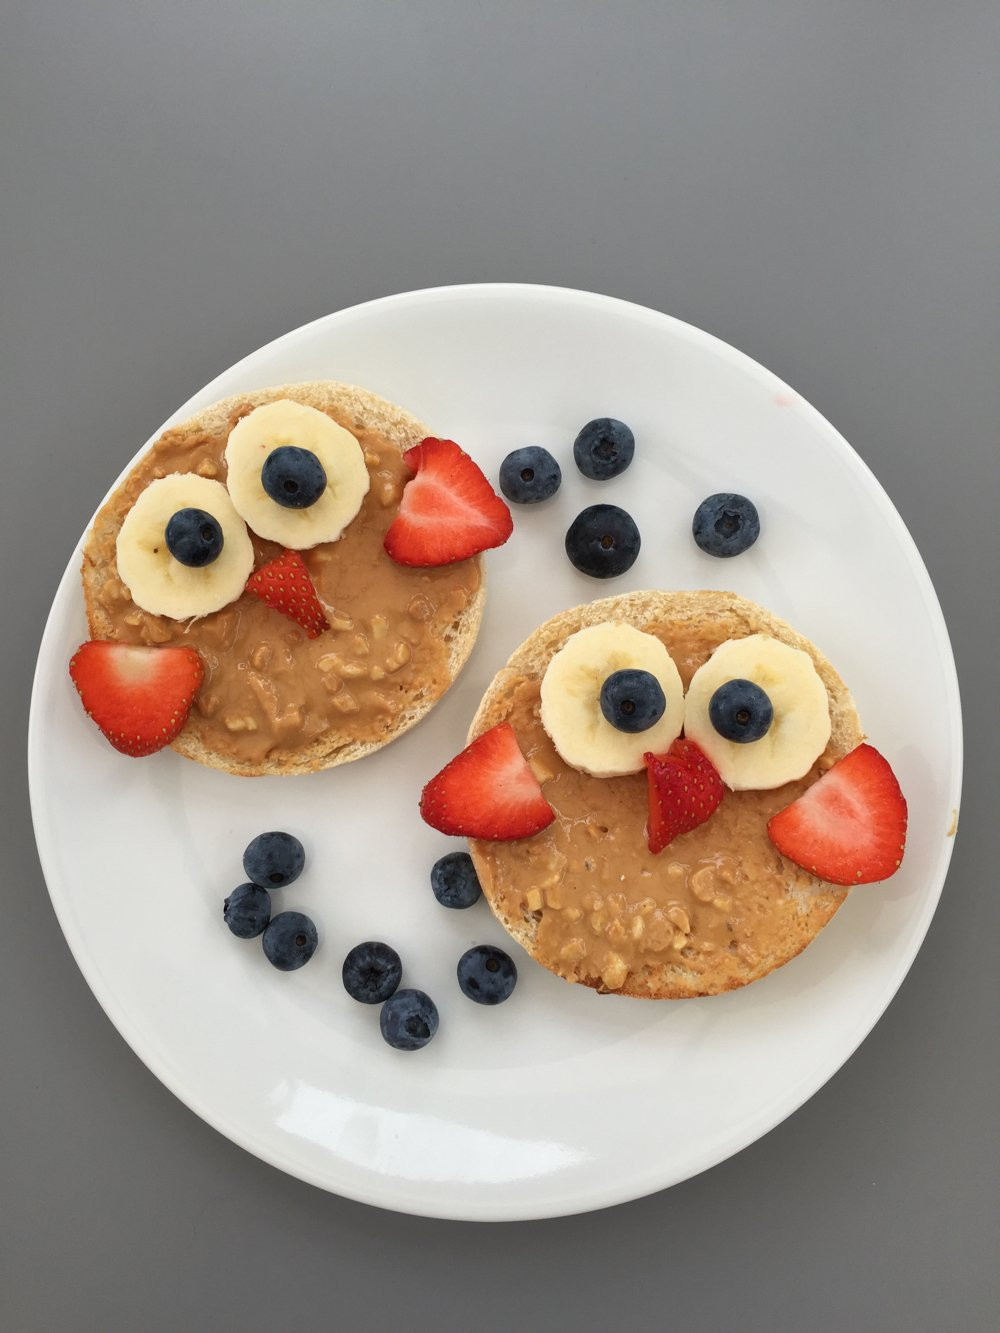 Easy Breakfast Ideas For Kids
 Easy school day breakfast ideas